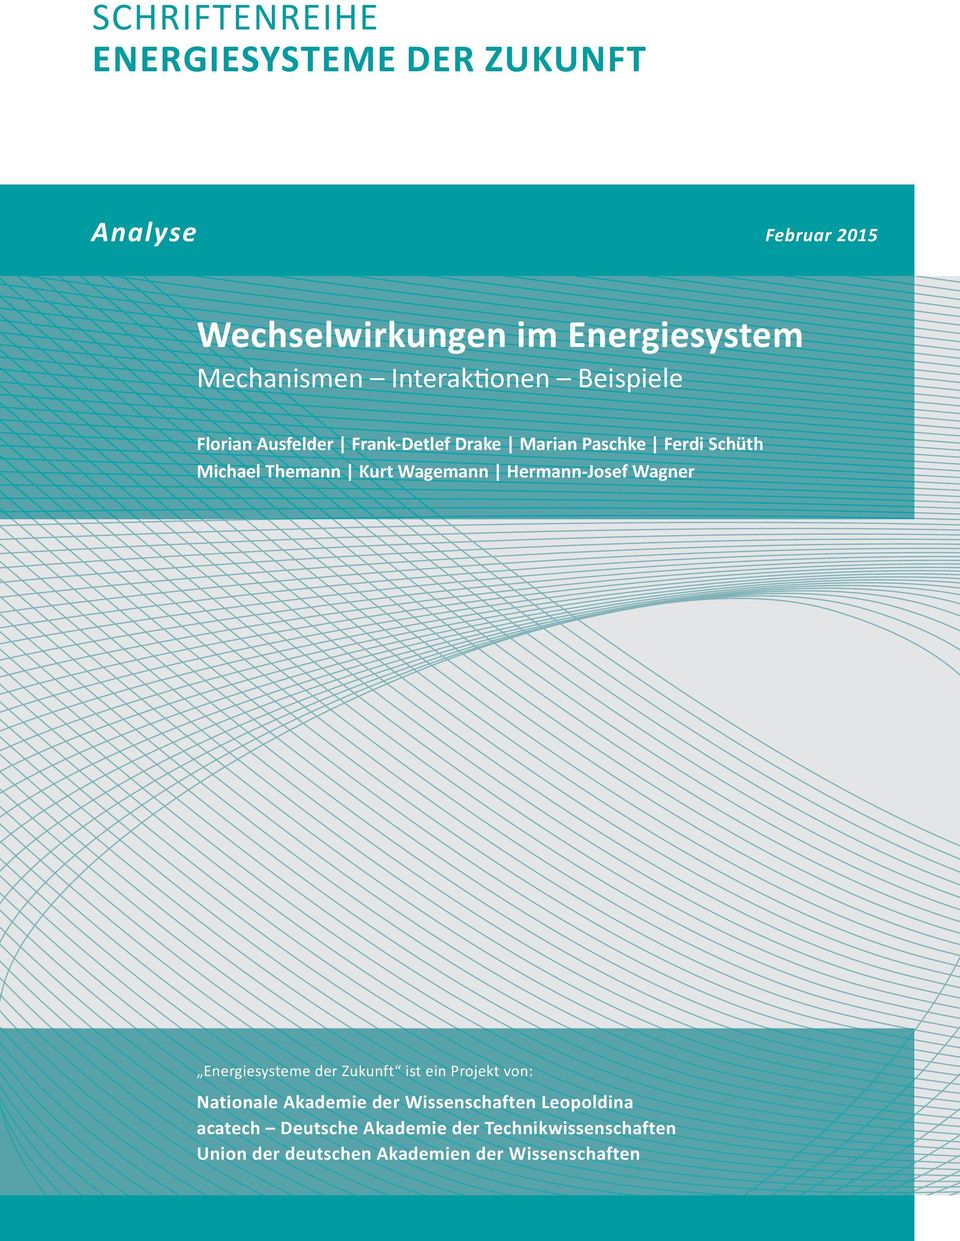 Wagemann Hermann-Josef Wagner Energiesysteme der Zukunft ist ein Projekt von: Nationale Akademie der